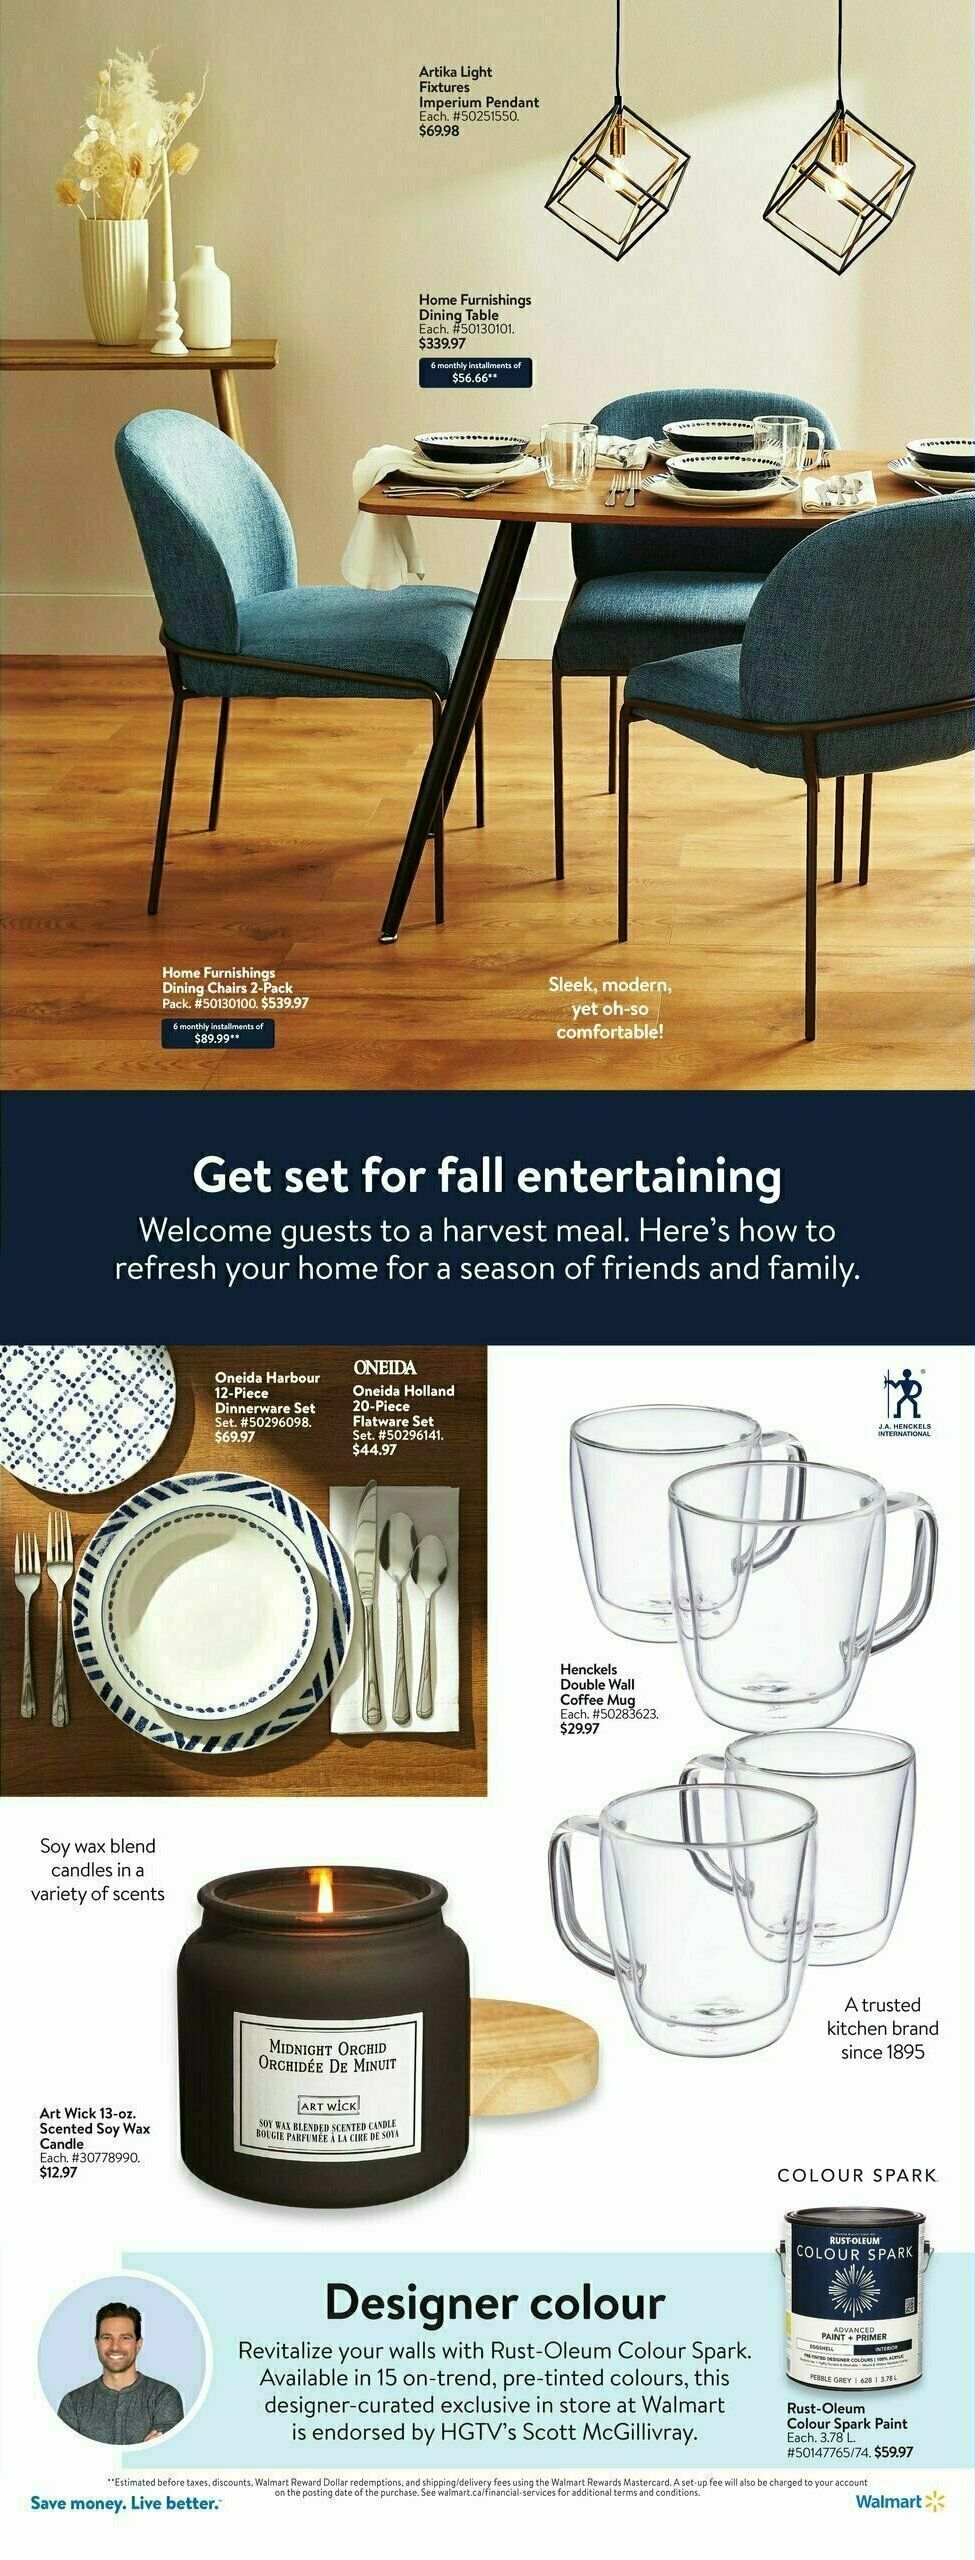 Walmart Spotlight Flyer from October 12